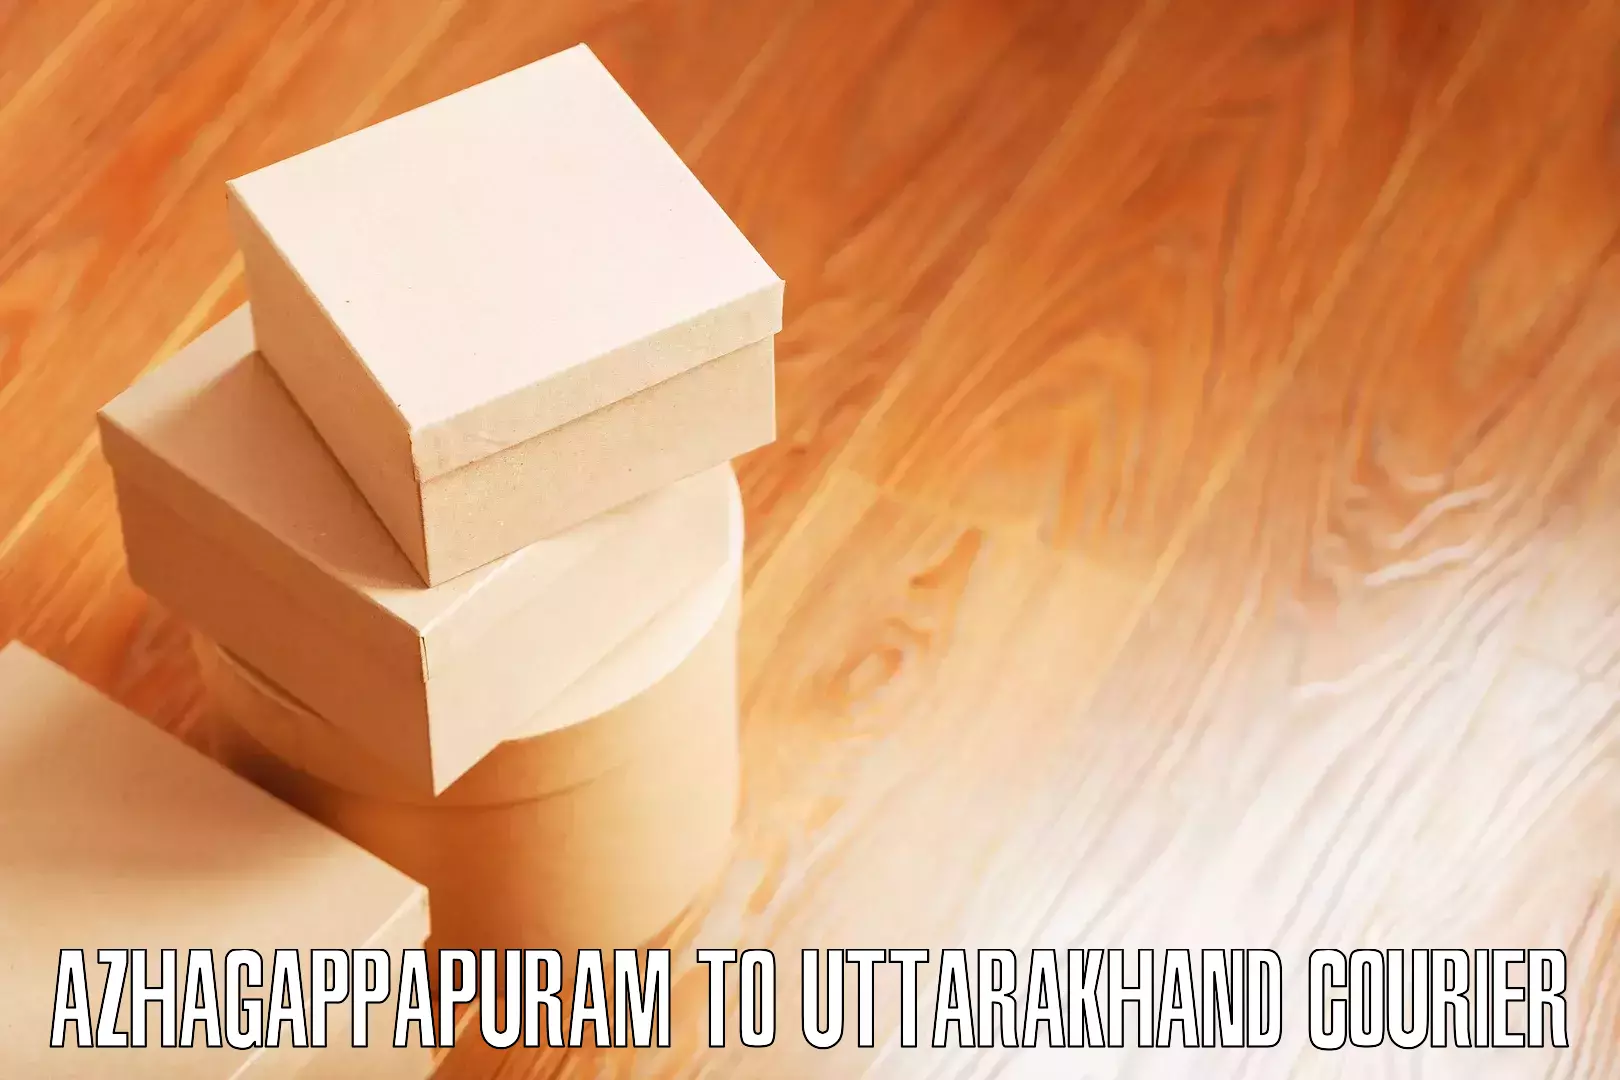 Household moving and handling Azhagappapuram to Pauri